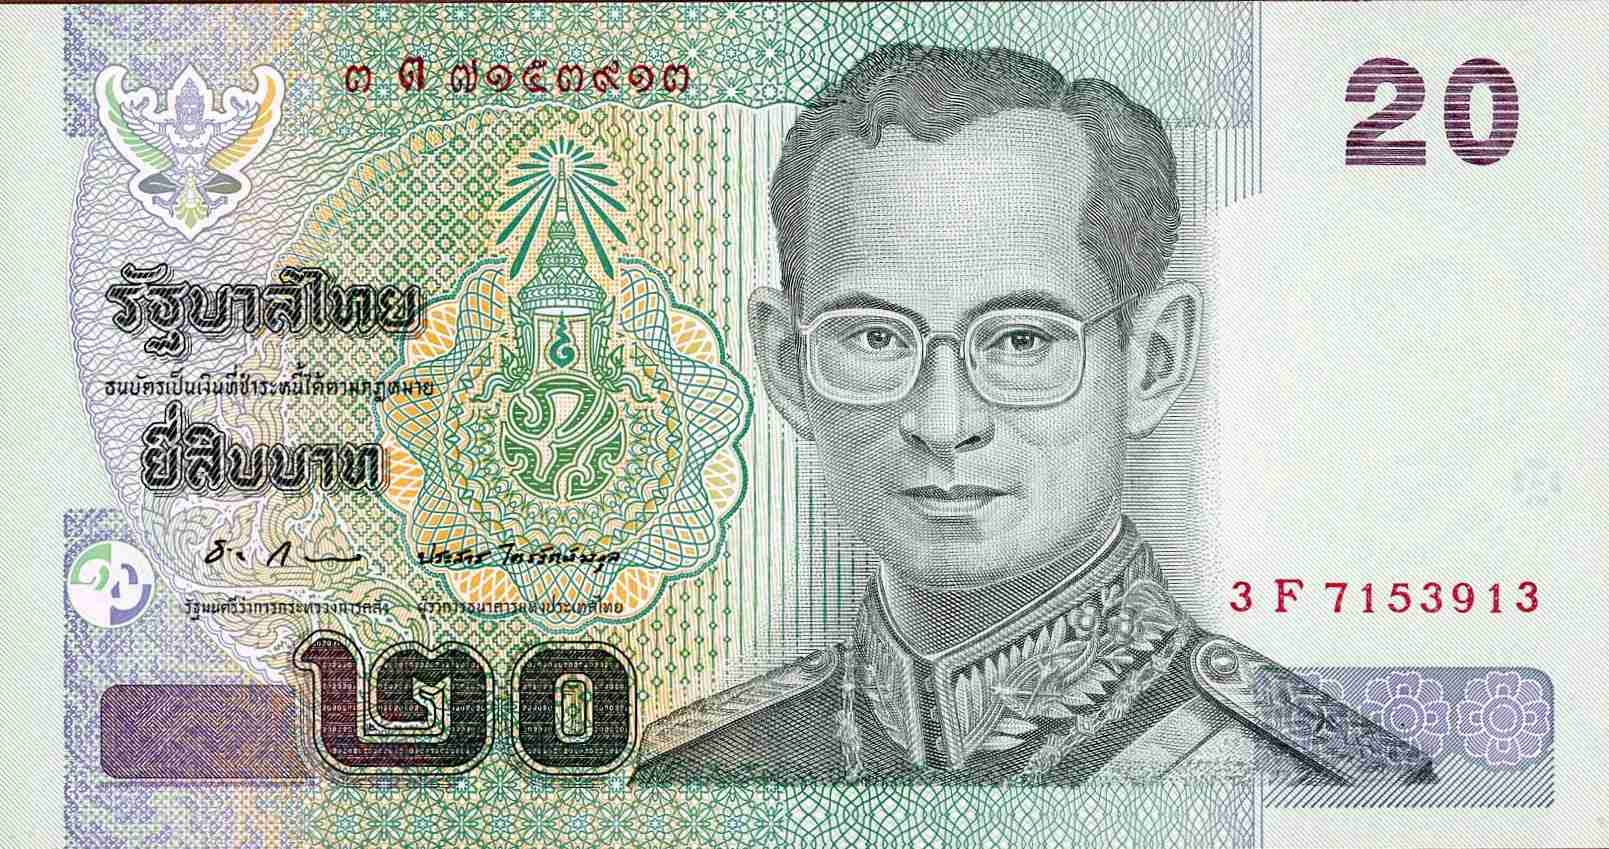 Thailand 20 baht 2003 face.jpg